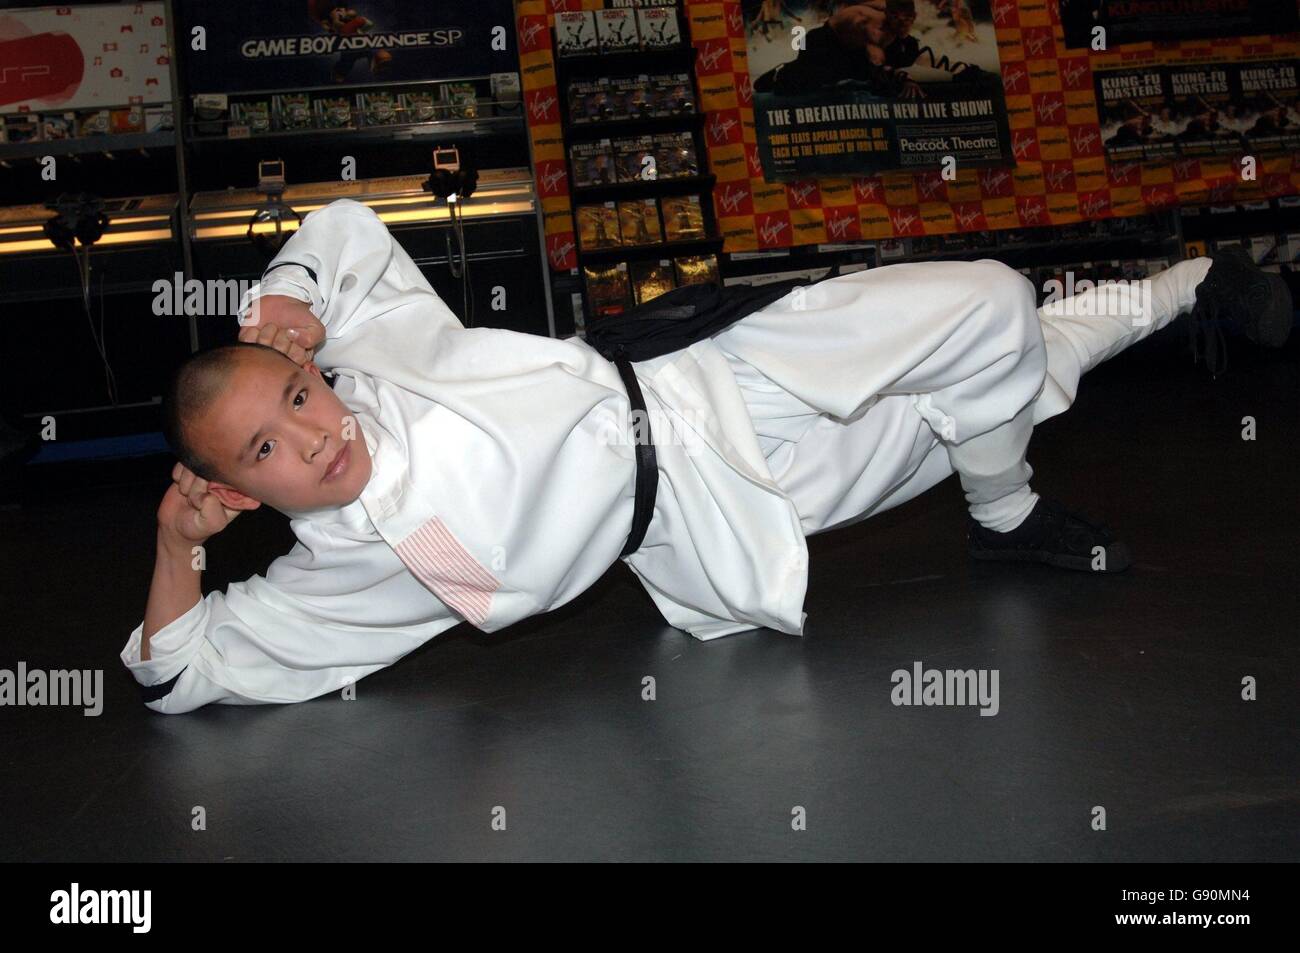 El Shaolin Monks (realizando actualmente en el Peacock Theatre) caída en Virgin Megastore para ayudar al lanzamiento del DVD de Kung Fu Sión, Oxford Street, en el centro de Londres, el viernes 28 de octubre de 2005. Asociación de la prensa de la foto. Crédito de la foto debe leer: Steve Parsons/PA. Foto de stock